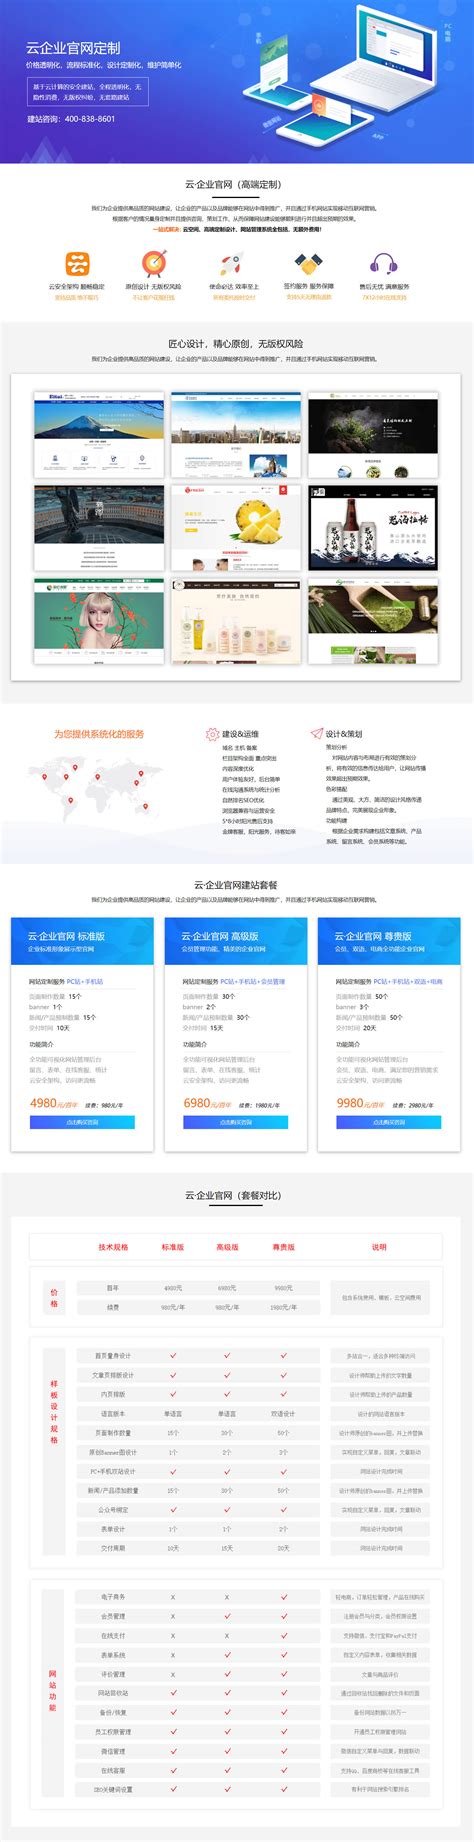 杭州网站设计公司价格